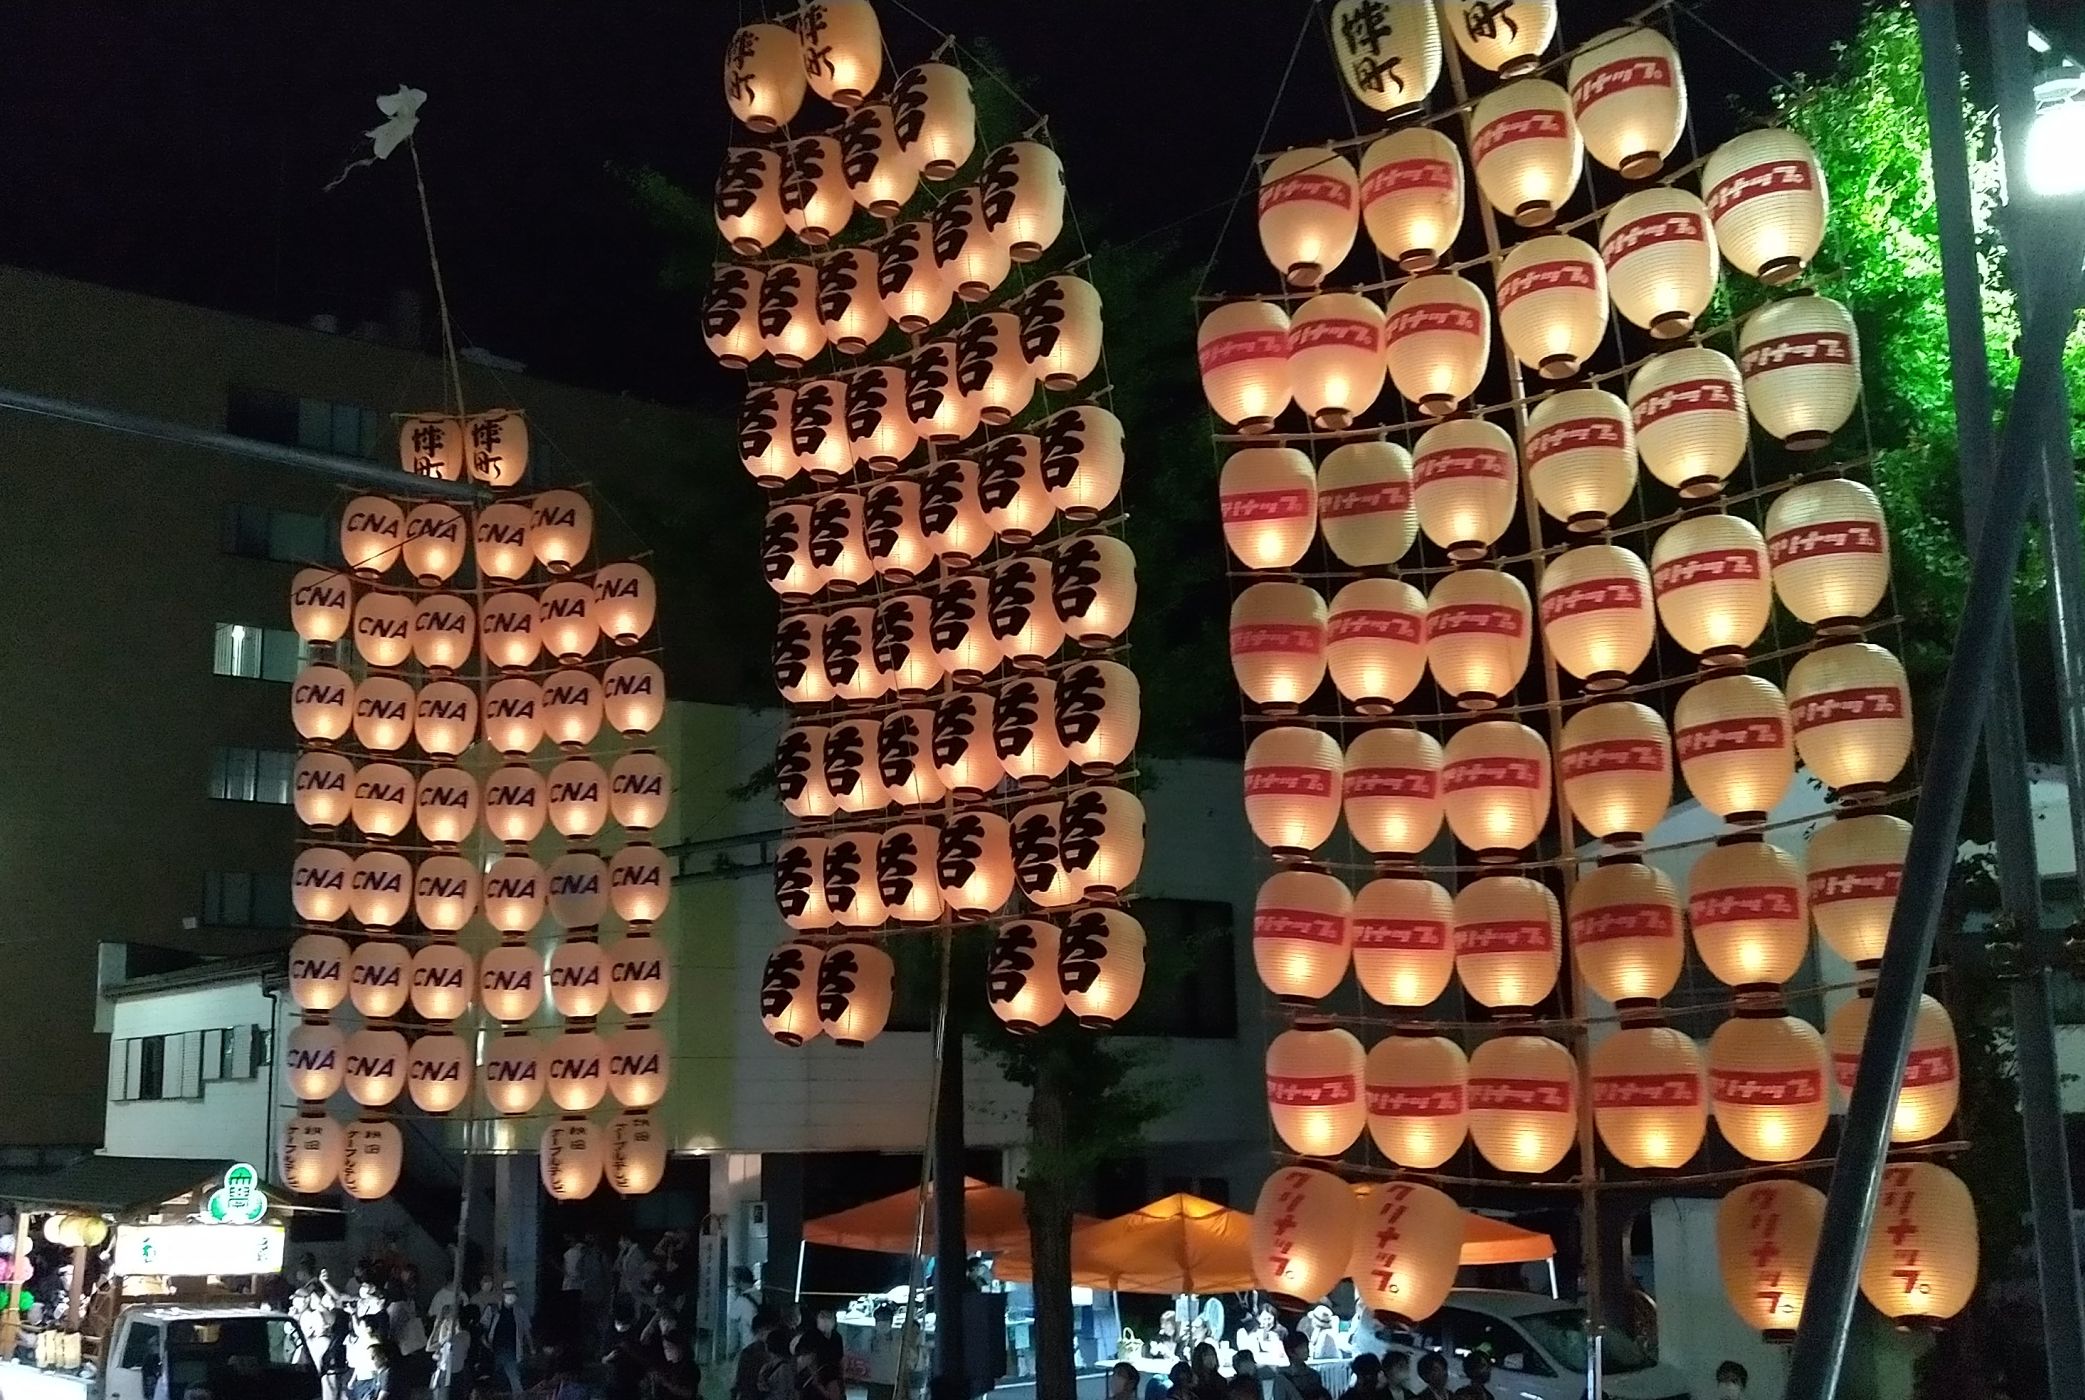 秋田竿燈祭り Kanto Festival in Akita